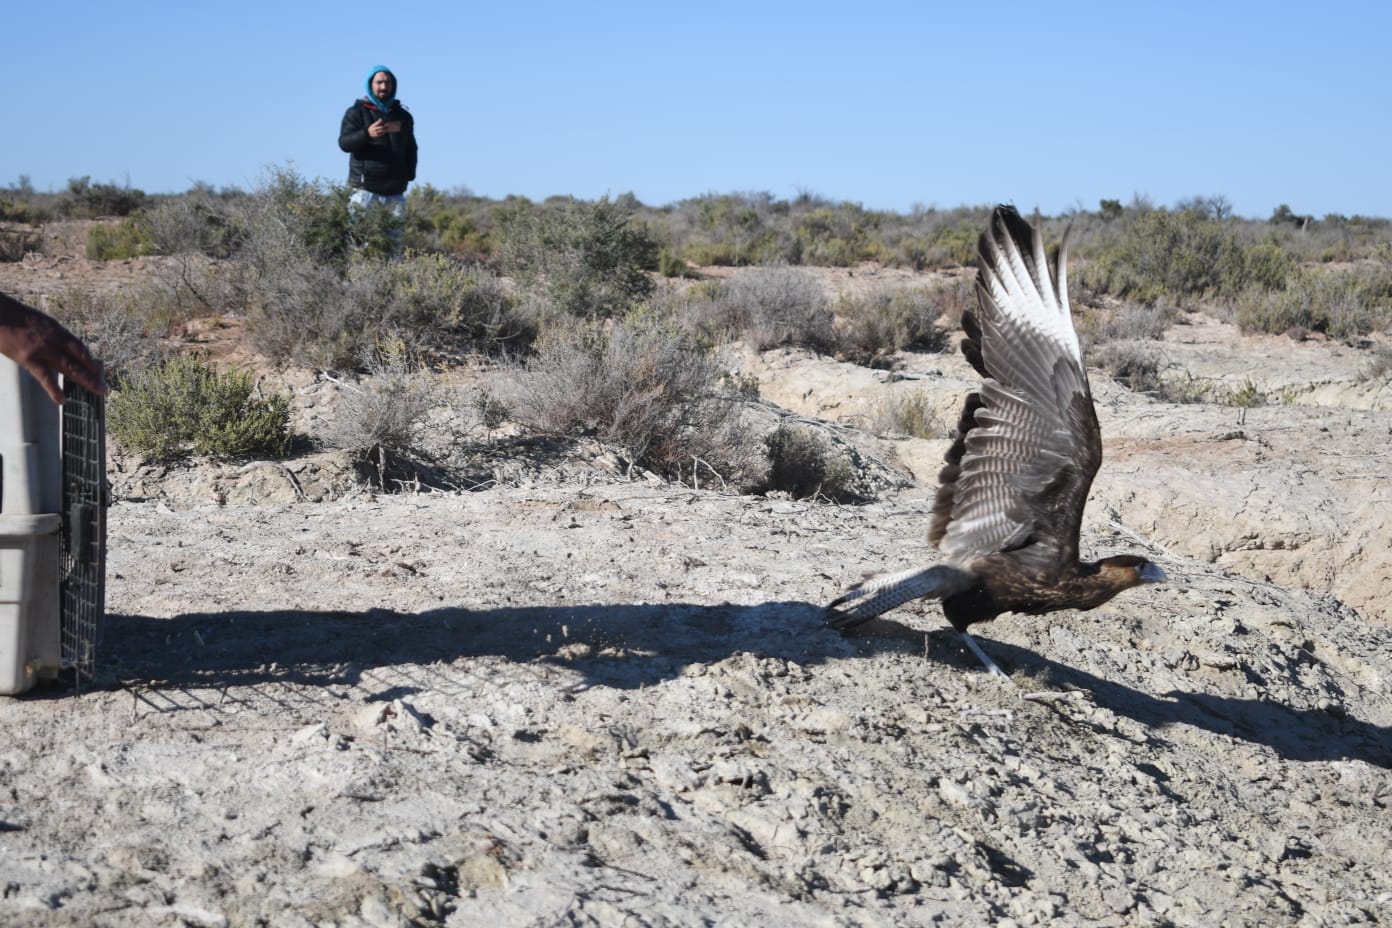 Aves rescatadas volvieron a su entorno gracias al trabajo coordinado entre Mendoza y San Luis